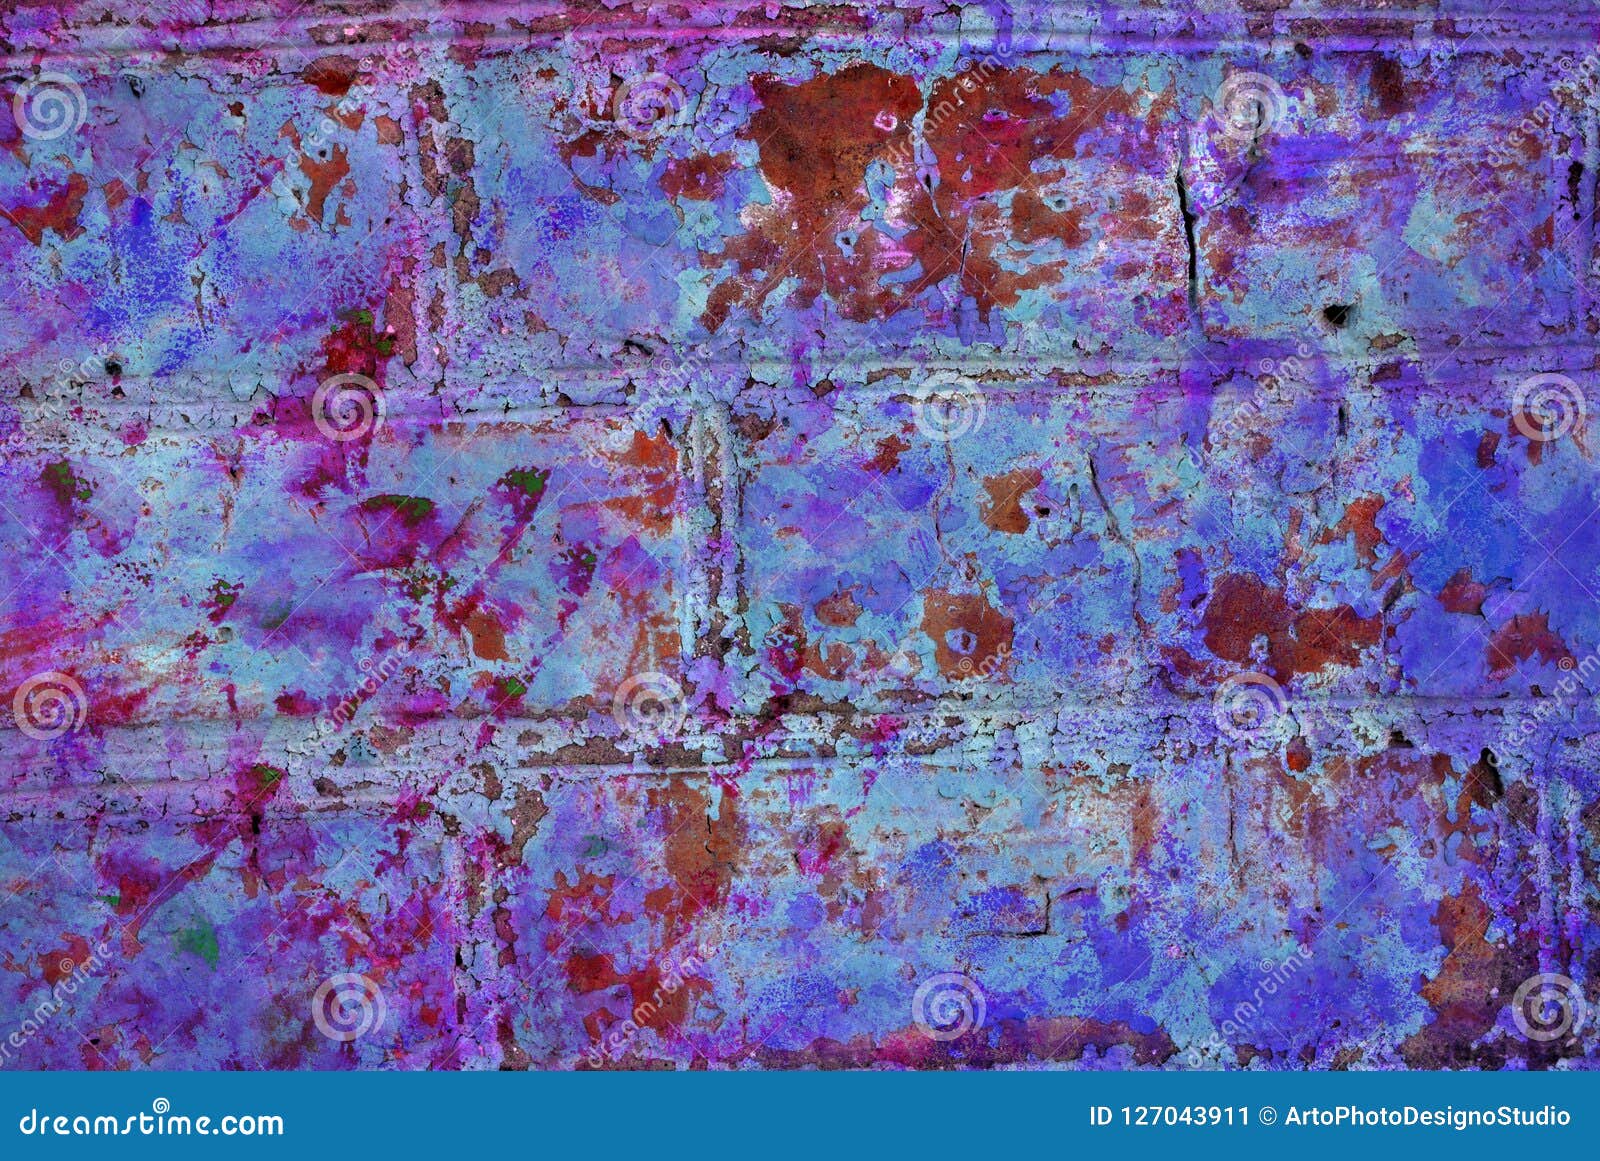 Το μικτό έργο τέχνης μέσων, αφαιρεί το ζωηρόχρωμο καλλιτεχνικό χρωματισμένο στρώμα στη ρόδινη παλέτα χρώματος με τους μπλε, πορφυρούς παφλασμούς στο υπόβαθρο φωτογραφίας σύστασης τουβλότοιχος grunge